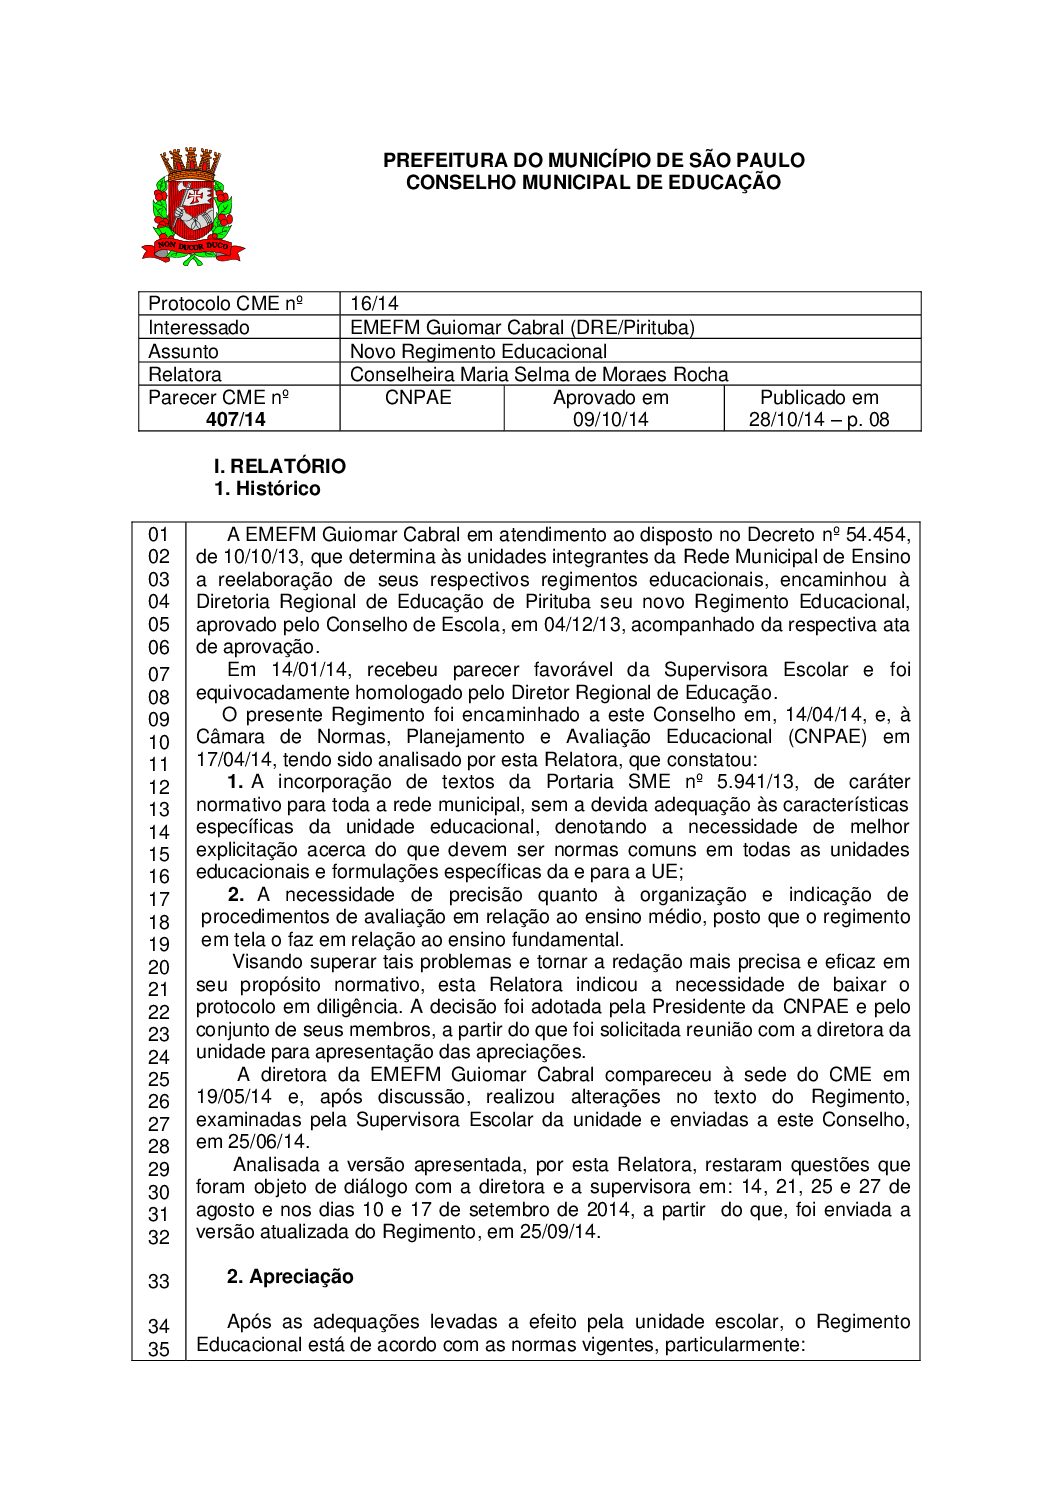 Parecer CME nº 407/2014 - EMEFM Guiomar Cabral (DRE/Pirituba) - Novo Regimento Educacional